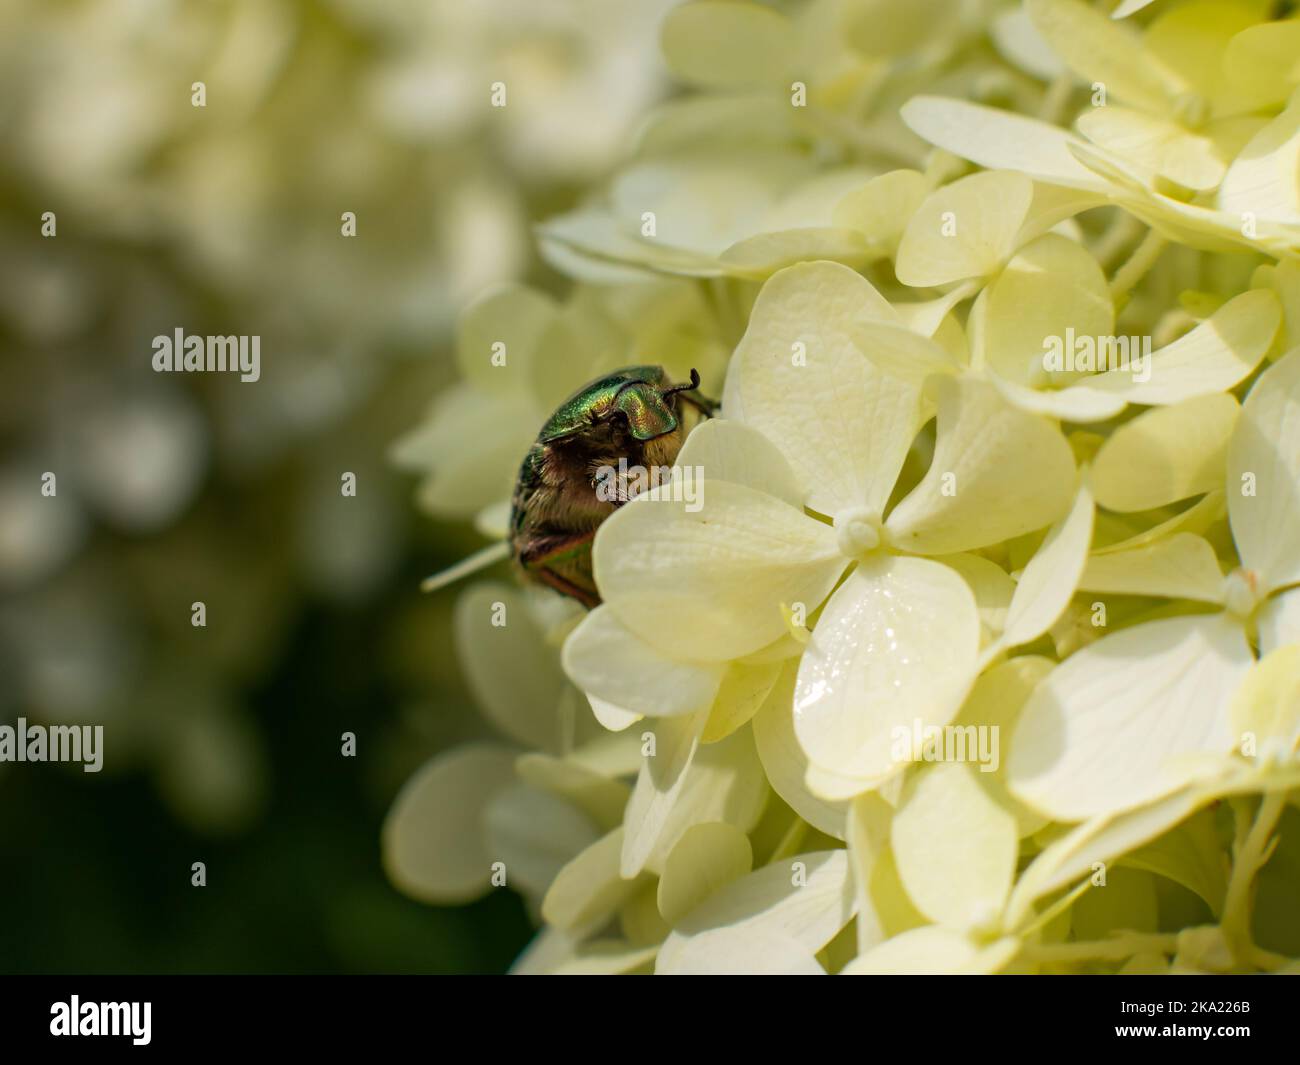 Faver di fiori (Cetoniinae) con un corpo verde brillante. L'insetto scarabeo sta strisciando sui fiori bianchi. La testina lucida è in primo piano. Foto Stock